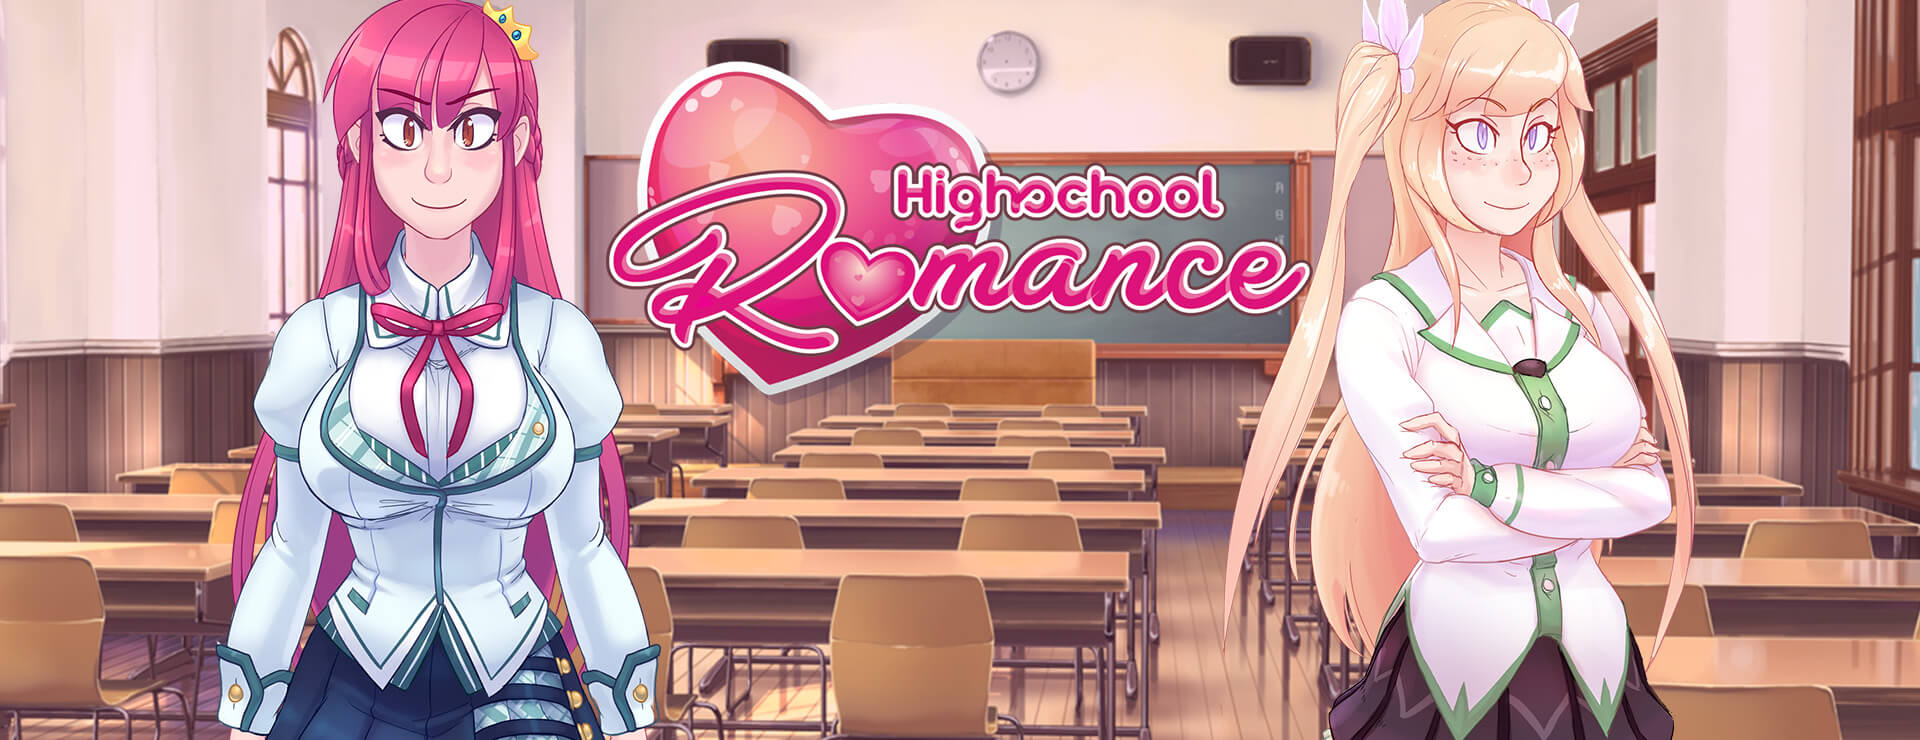 Highschool Romance - Novela Visual Juego